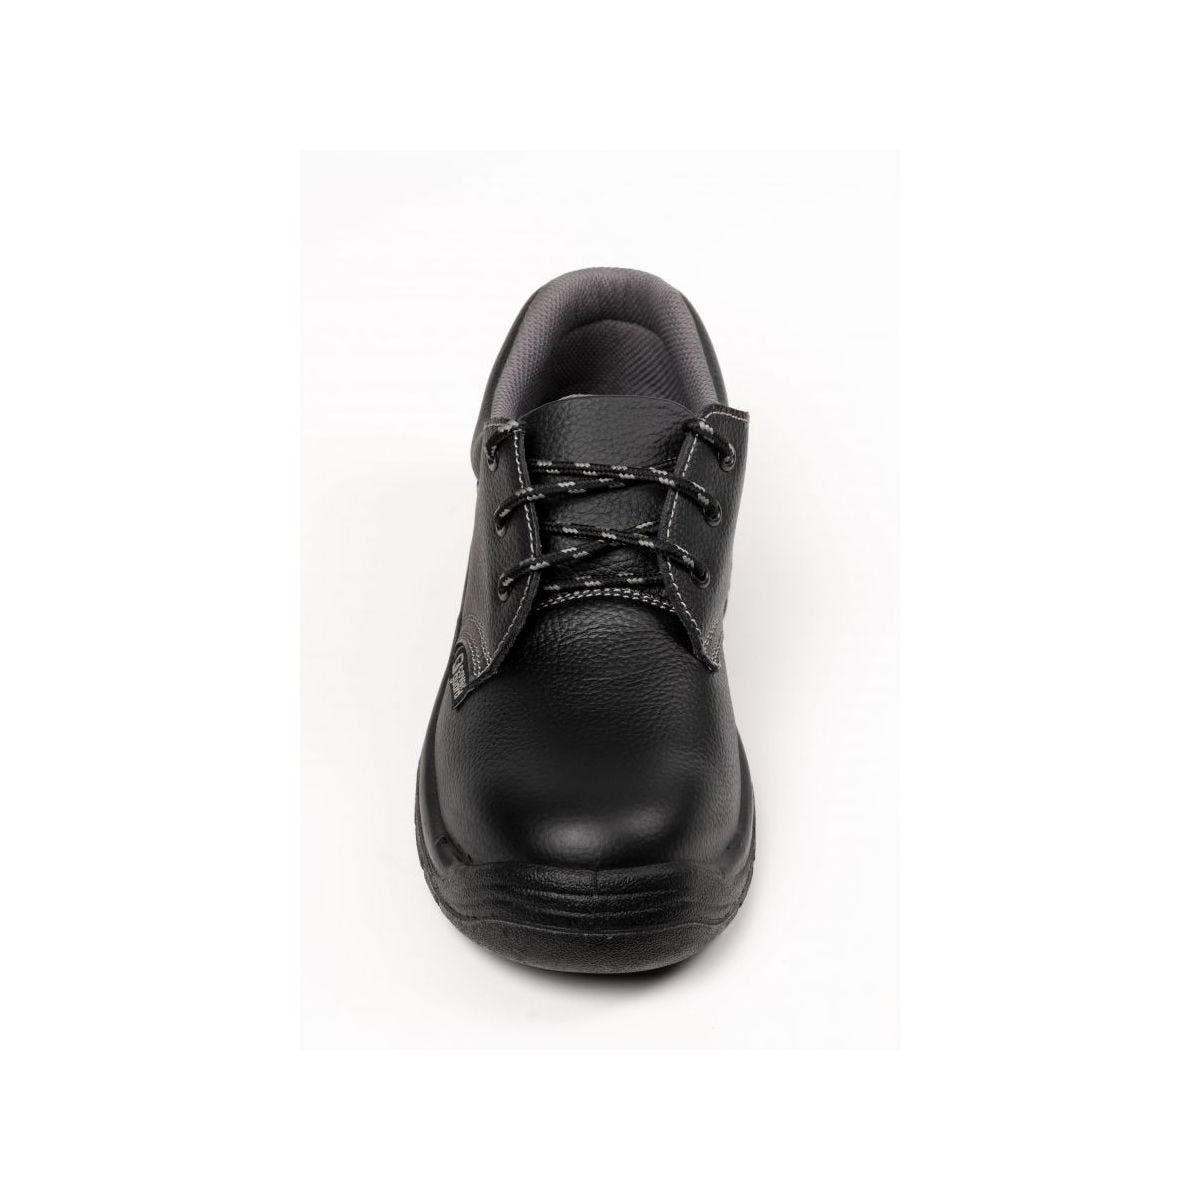 Chaussures de sécurité basses AGATE II S3 Noir - Coverguard - Taille 38 3